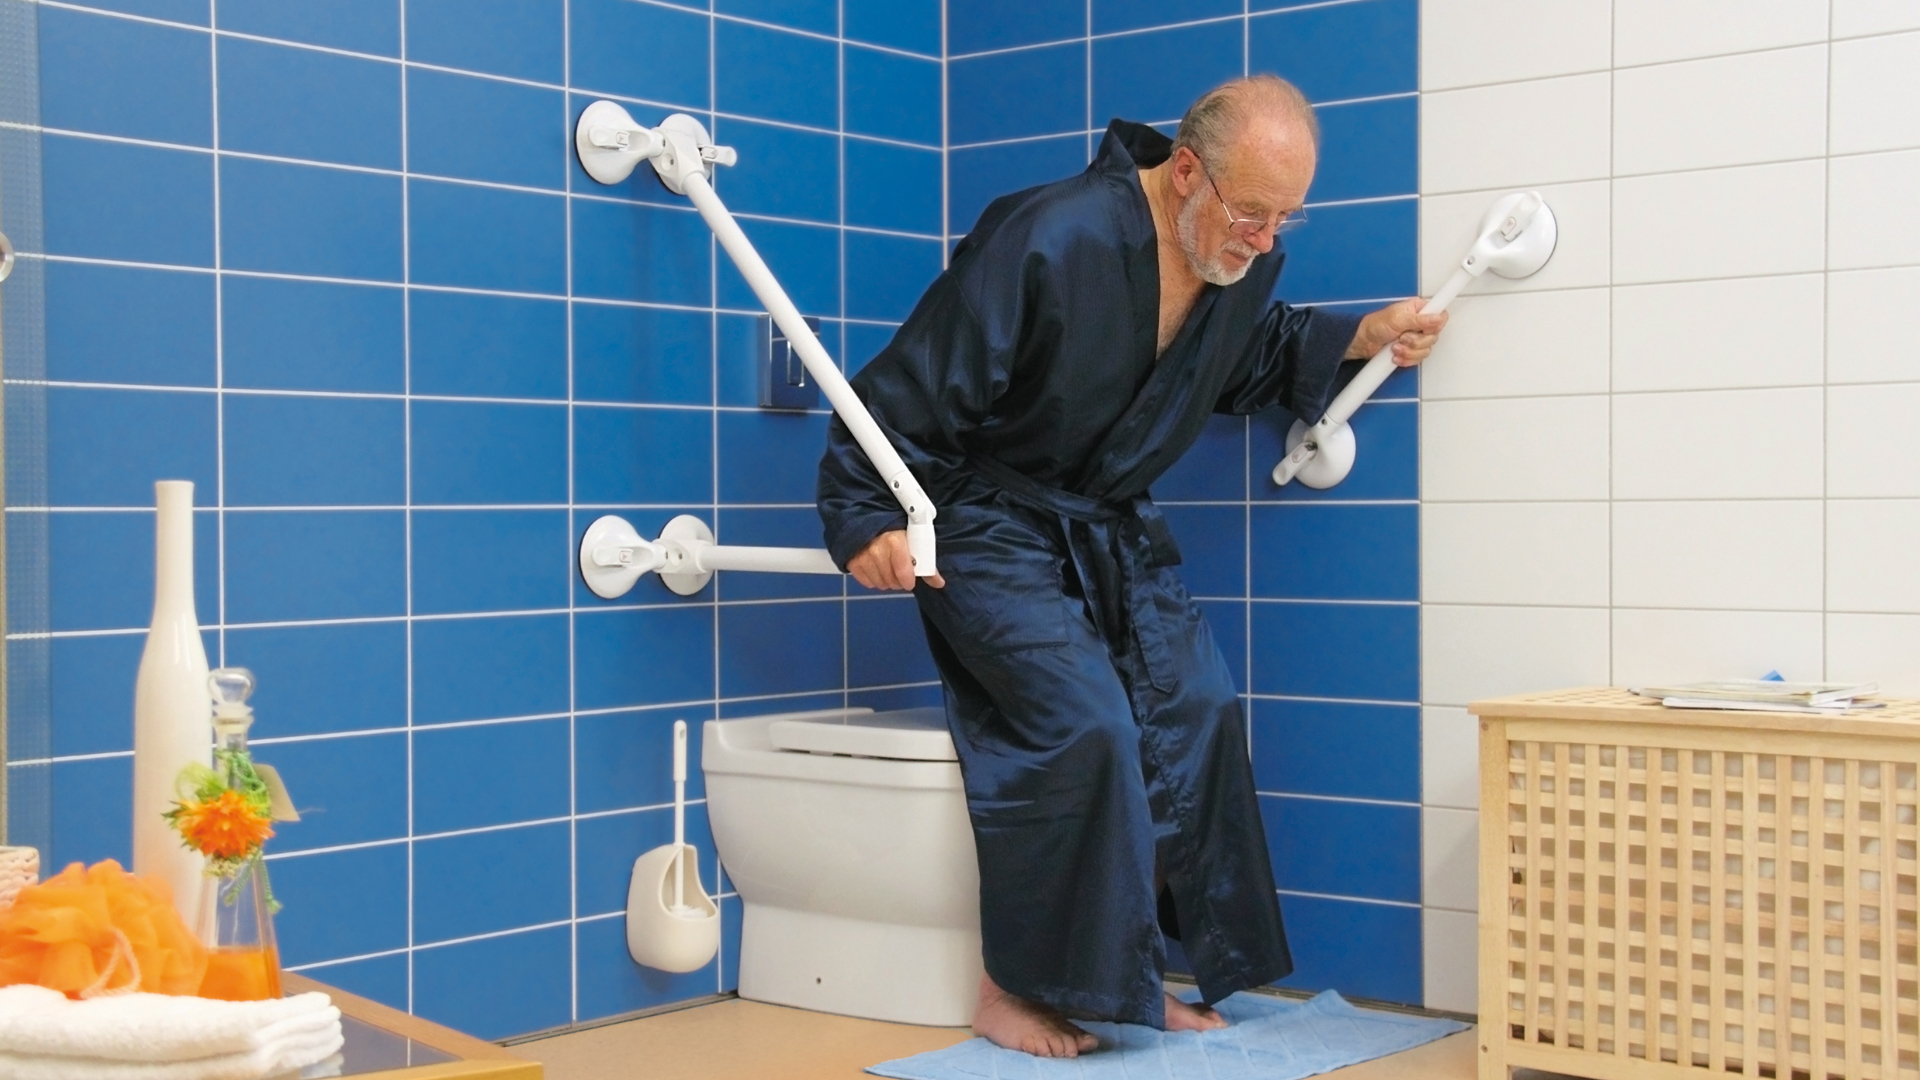 Ein Mann zieht sich mit Hilfe eines mobilen Haltegriffes aus der Badewanne.